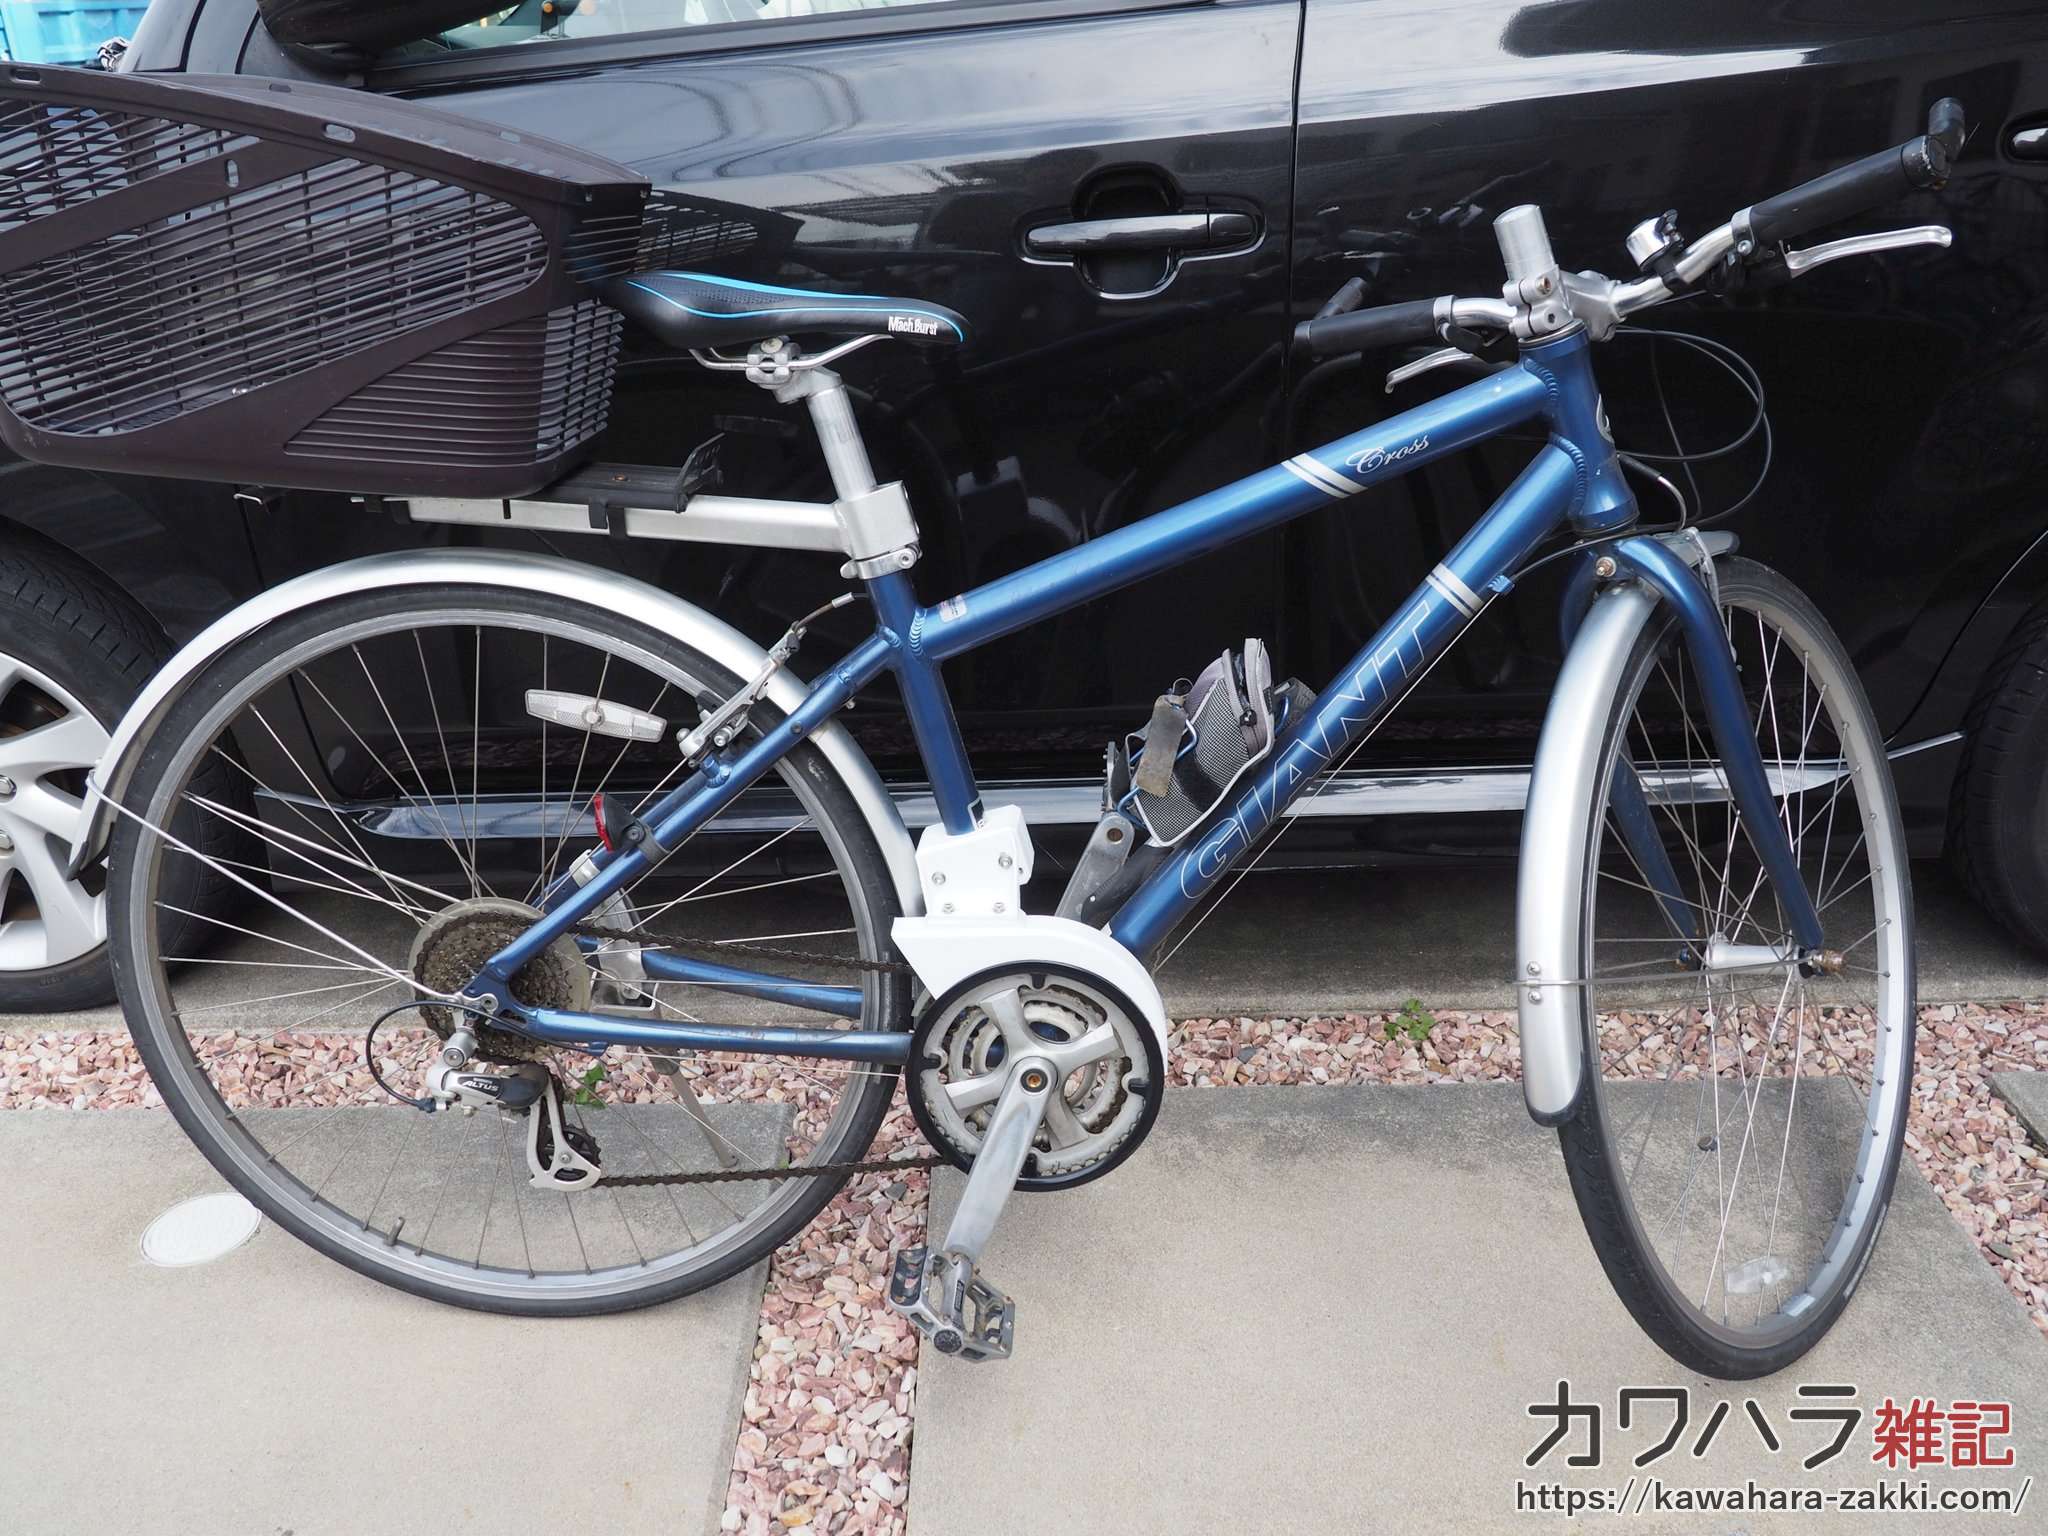 自転車(クロスバイク)のチェーンカバーを3Dプリンターで自作した | カワハラ雑記